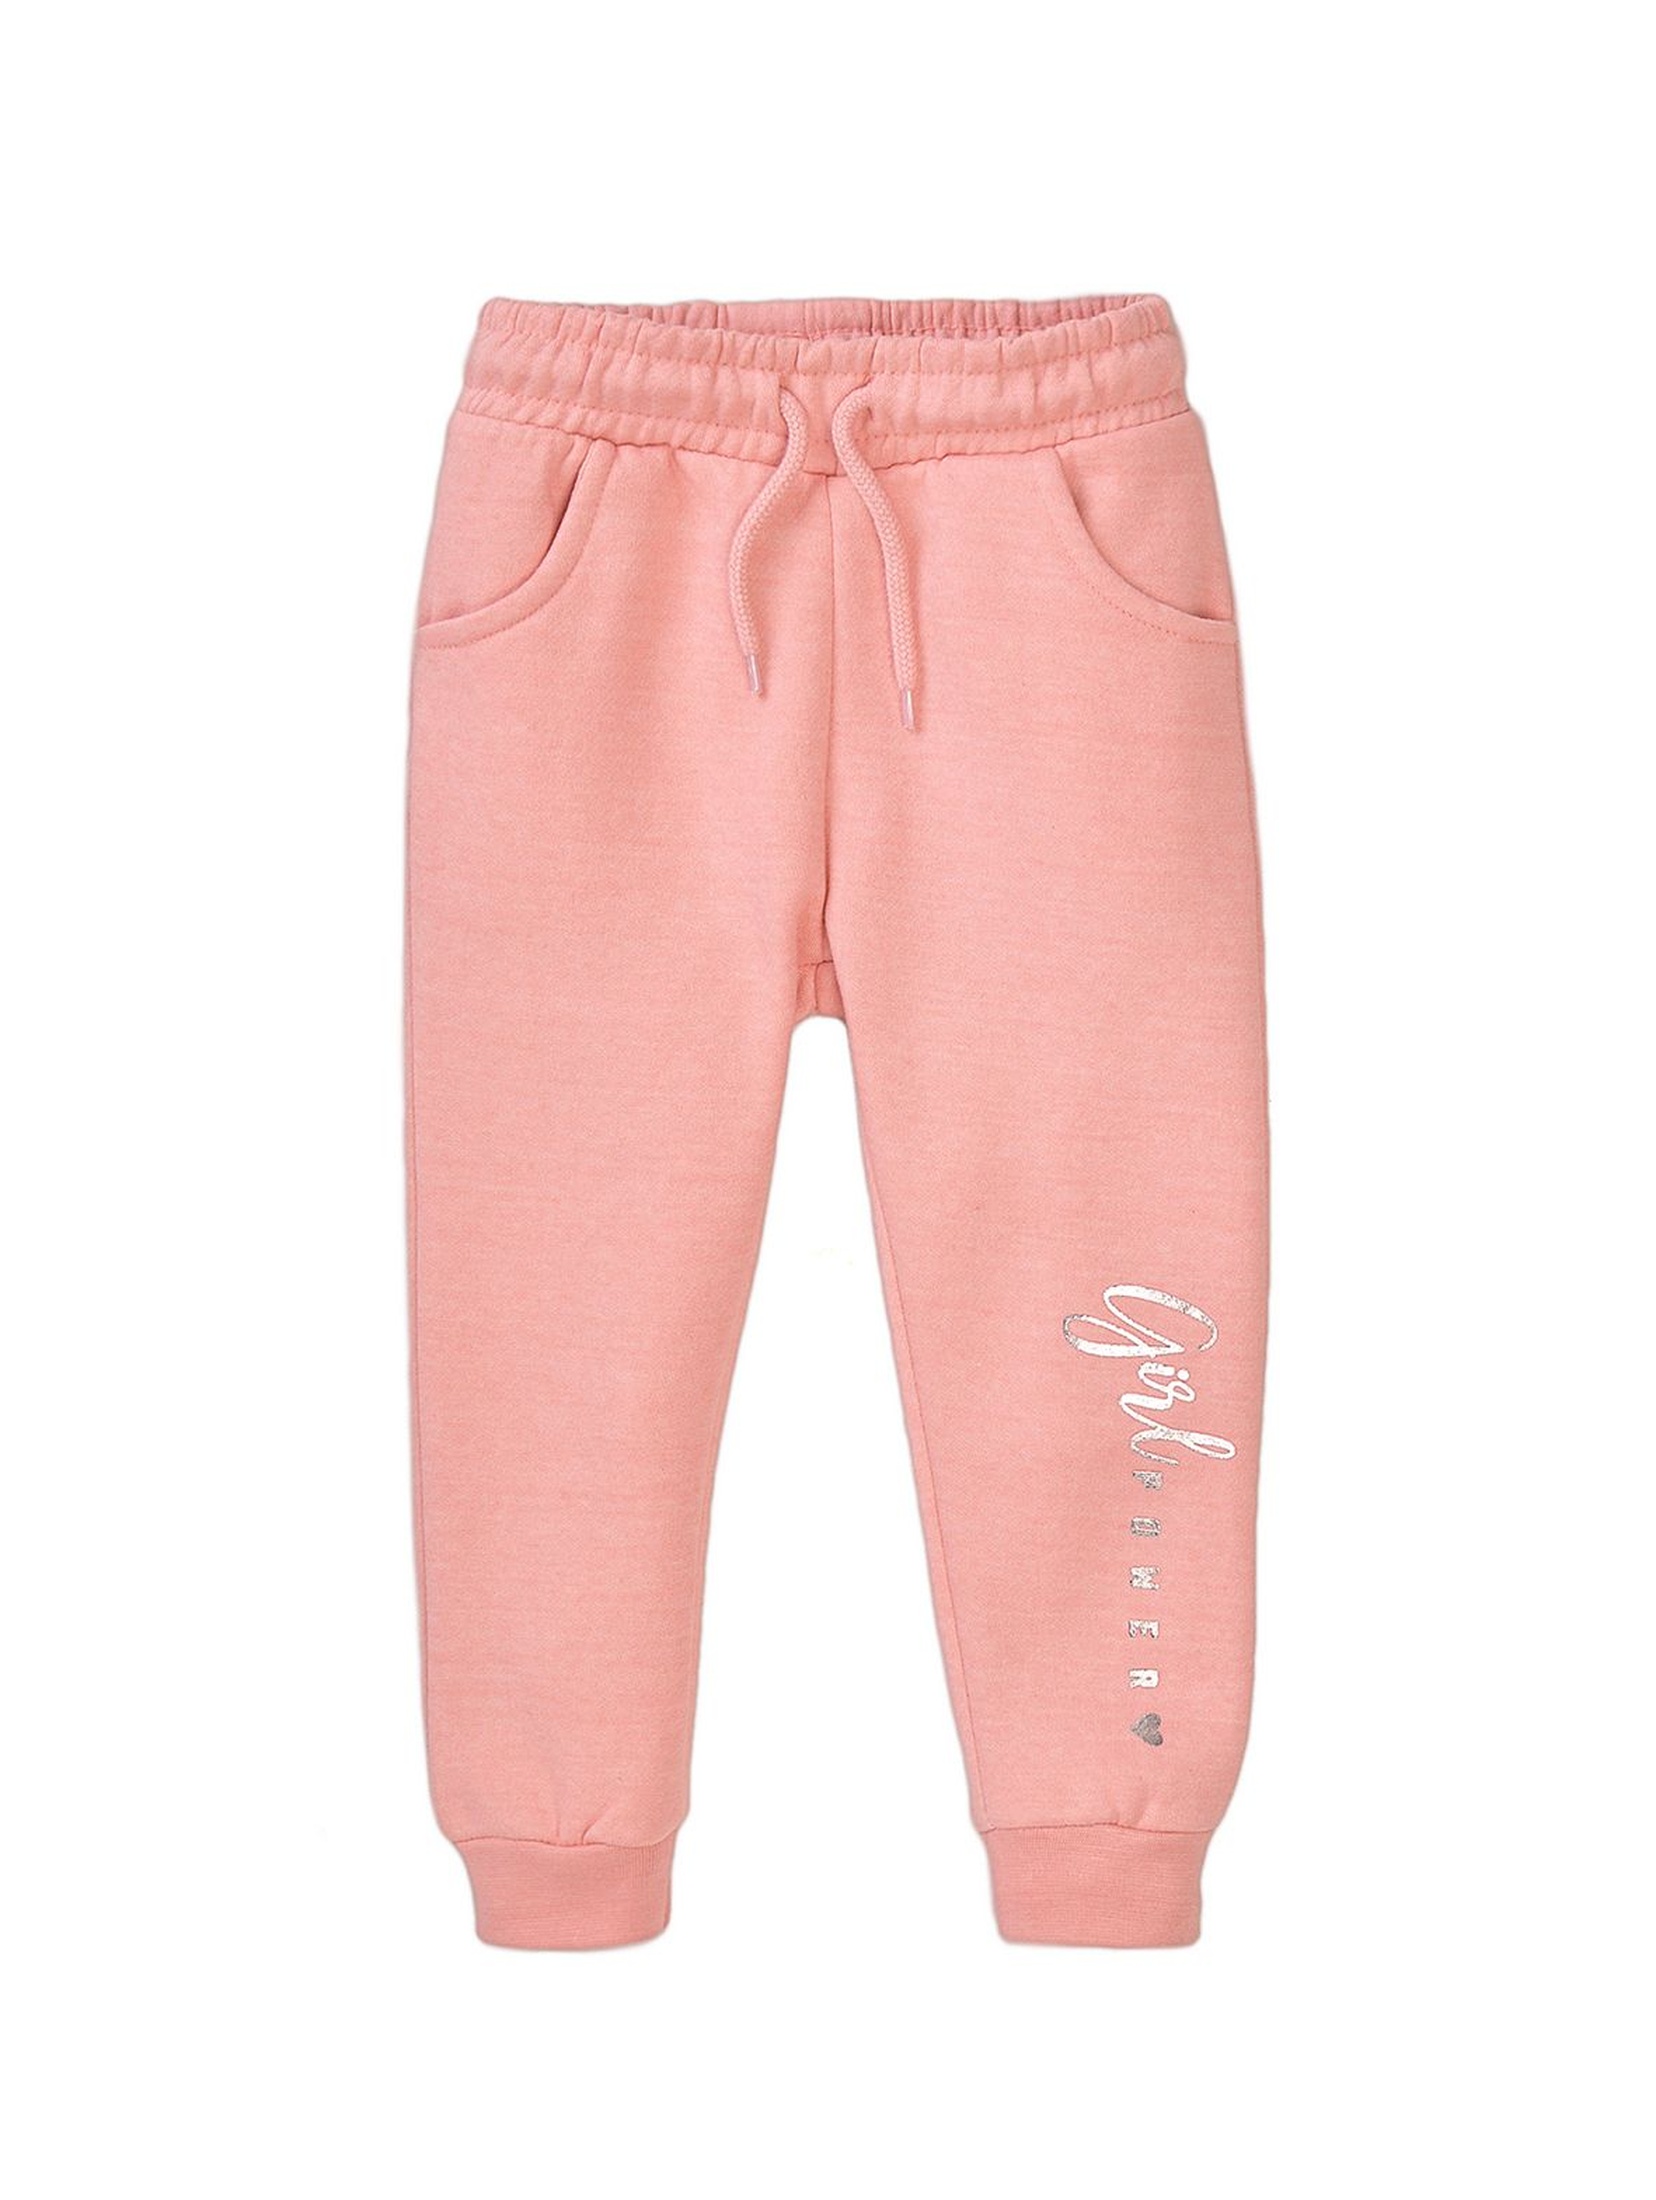 Spodnie dresowe niemowlęce różowe